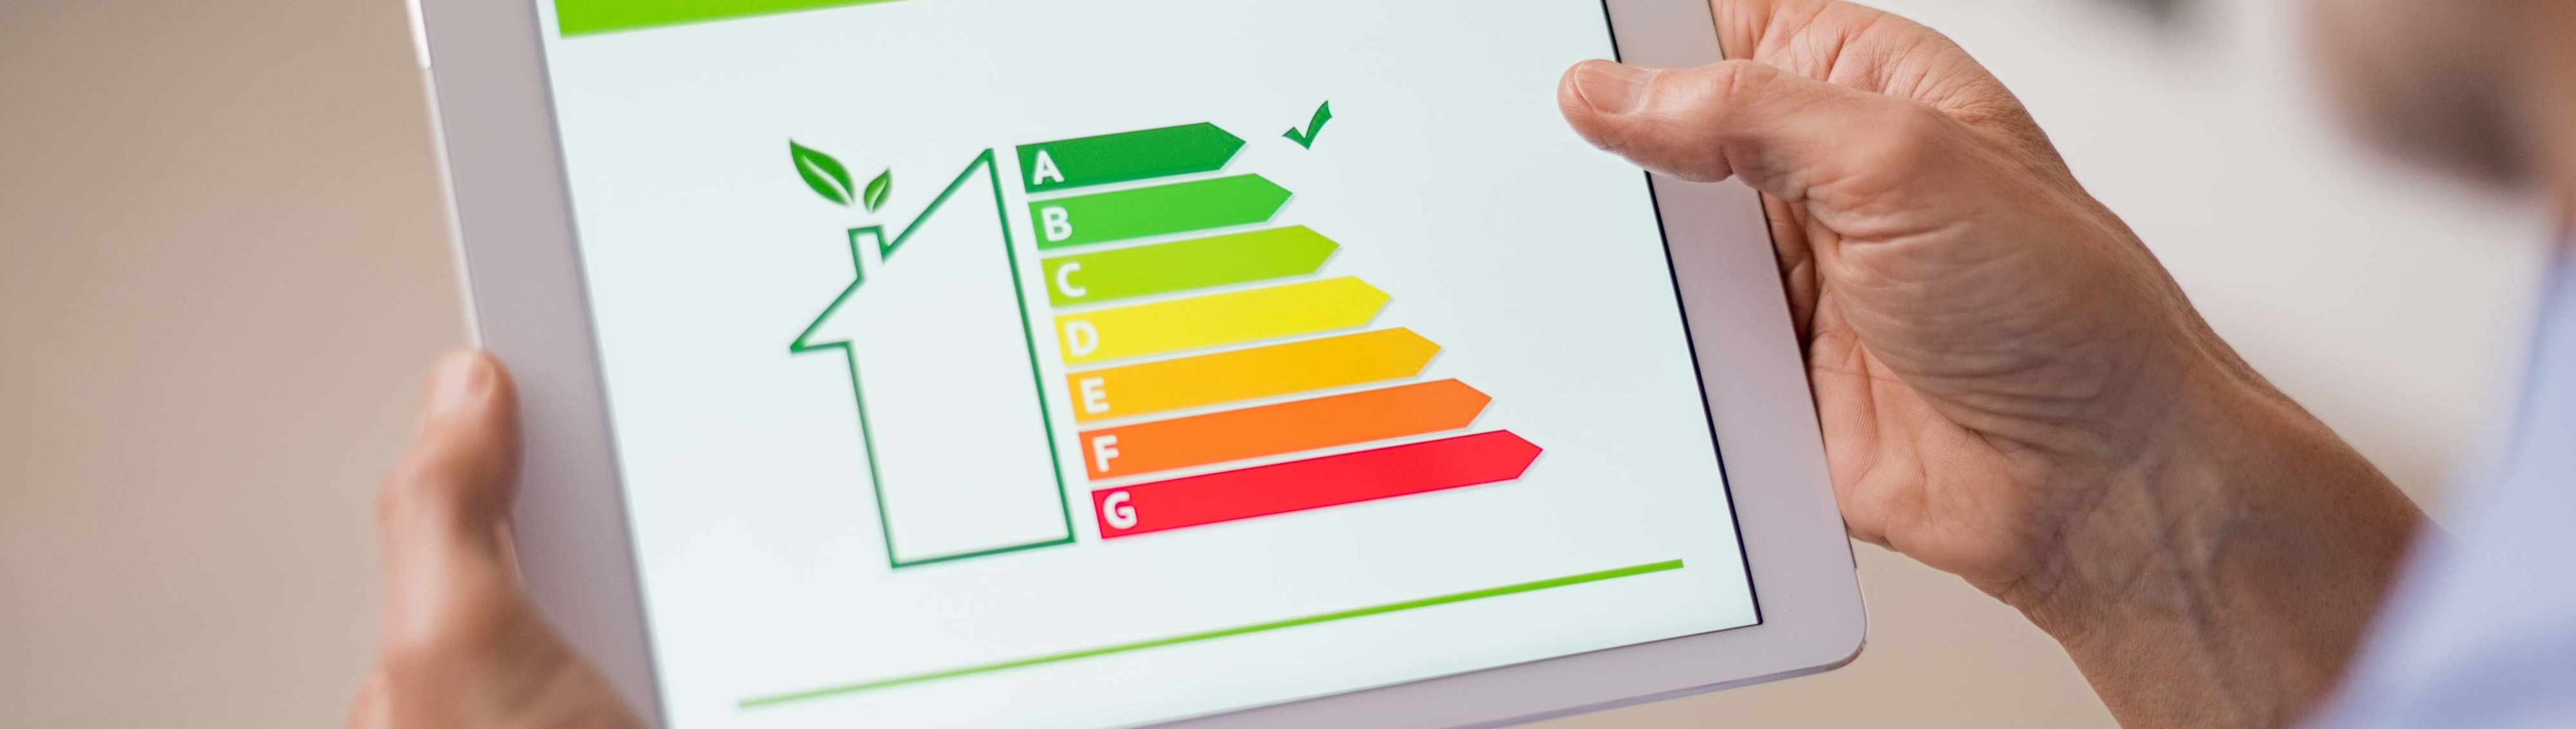 Tablet mit Grafik von Haus und Energieffizienz